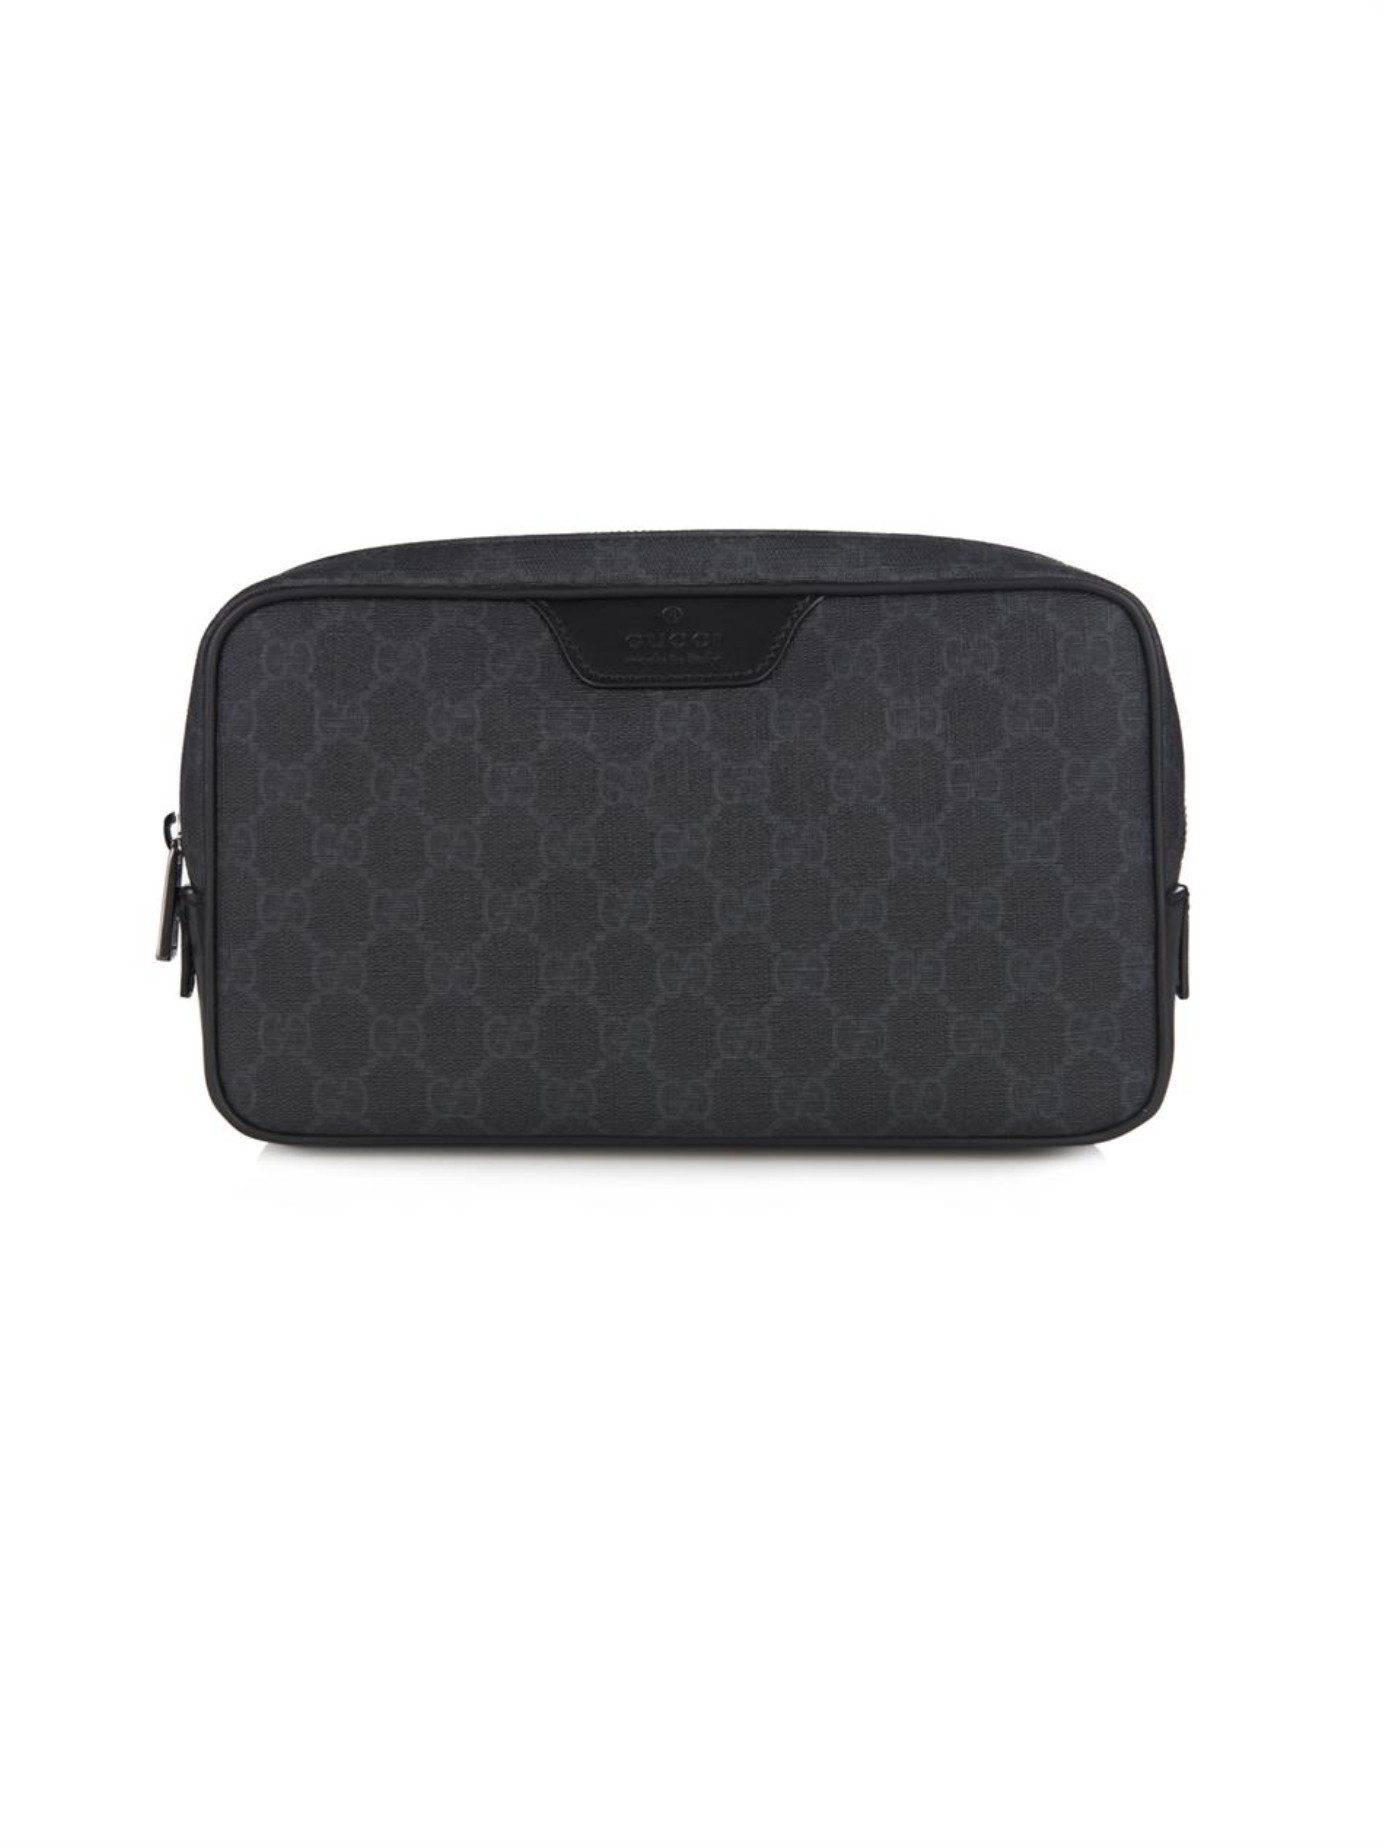 Gucci Monogram Gg Wash Bag in Black for Men - Lyst